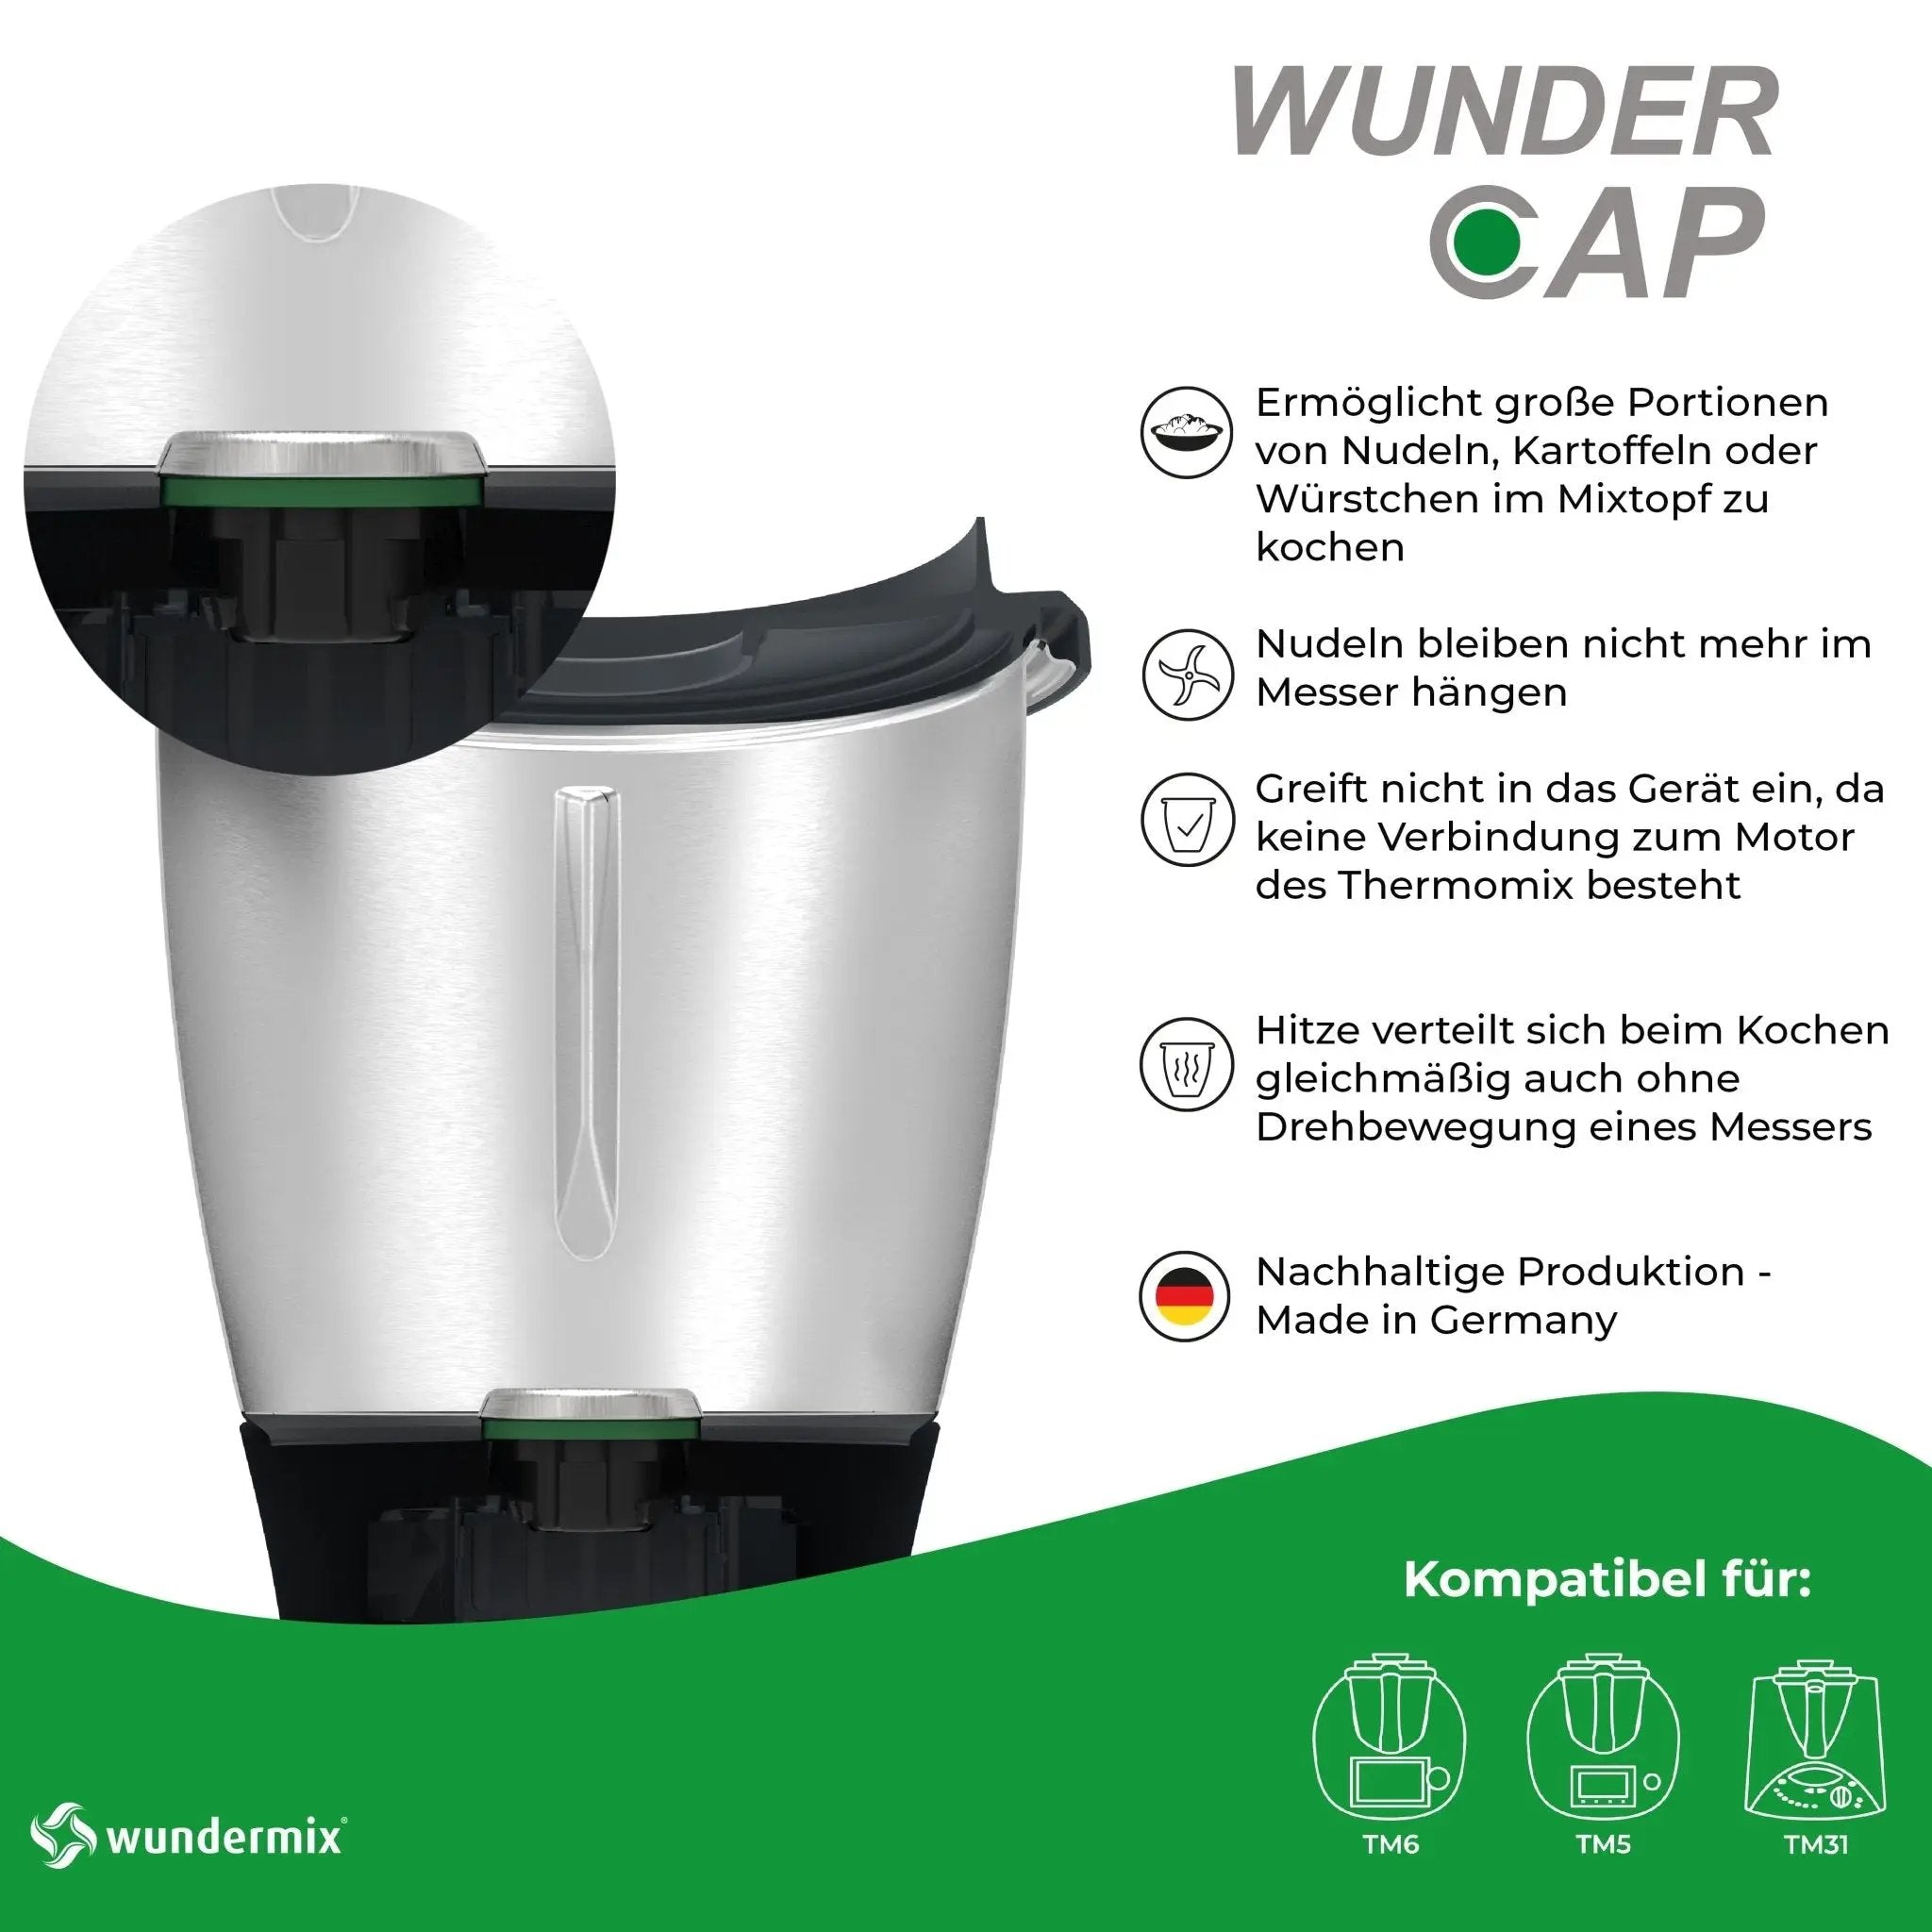 WunderCap® | Der revolutionäre Thermomix-Messerersatz - Wundermix GmbH